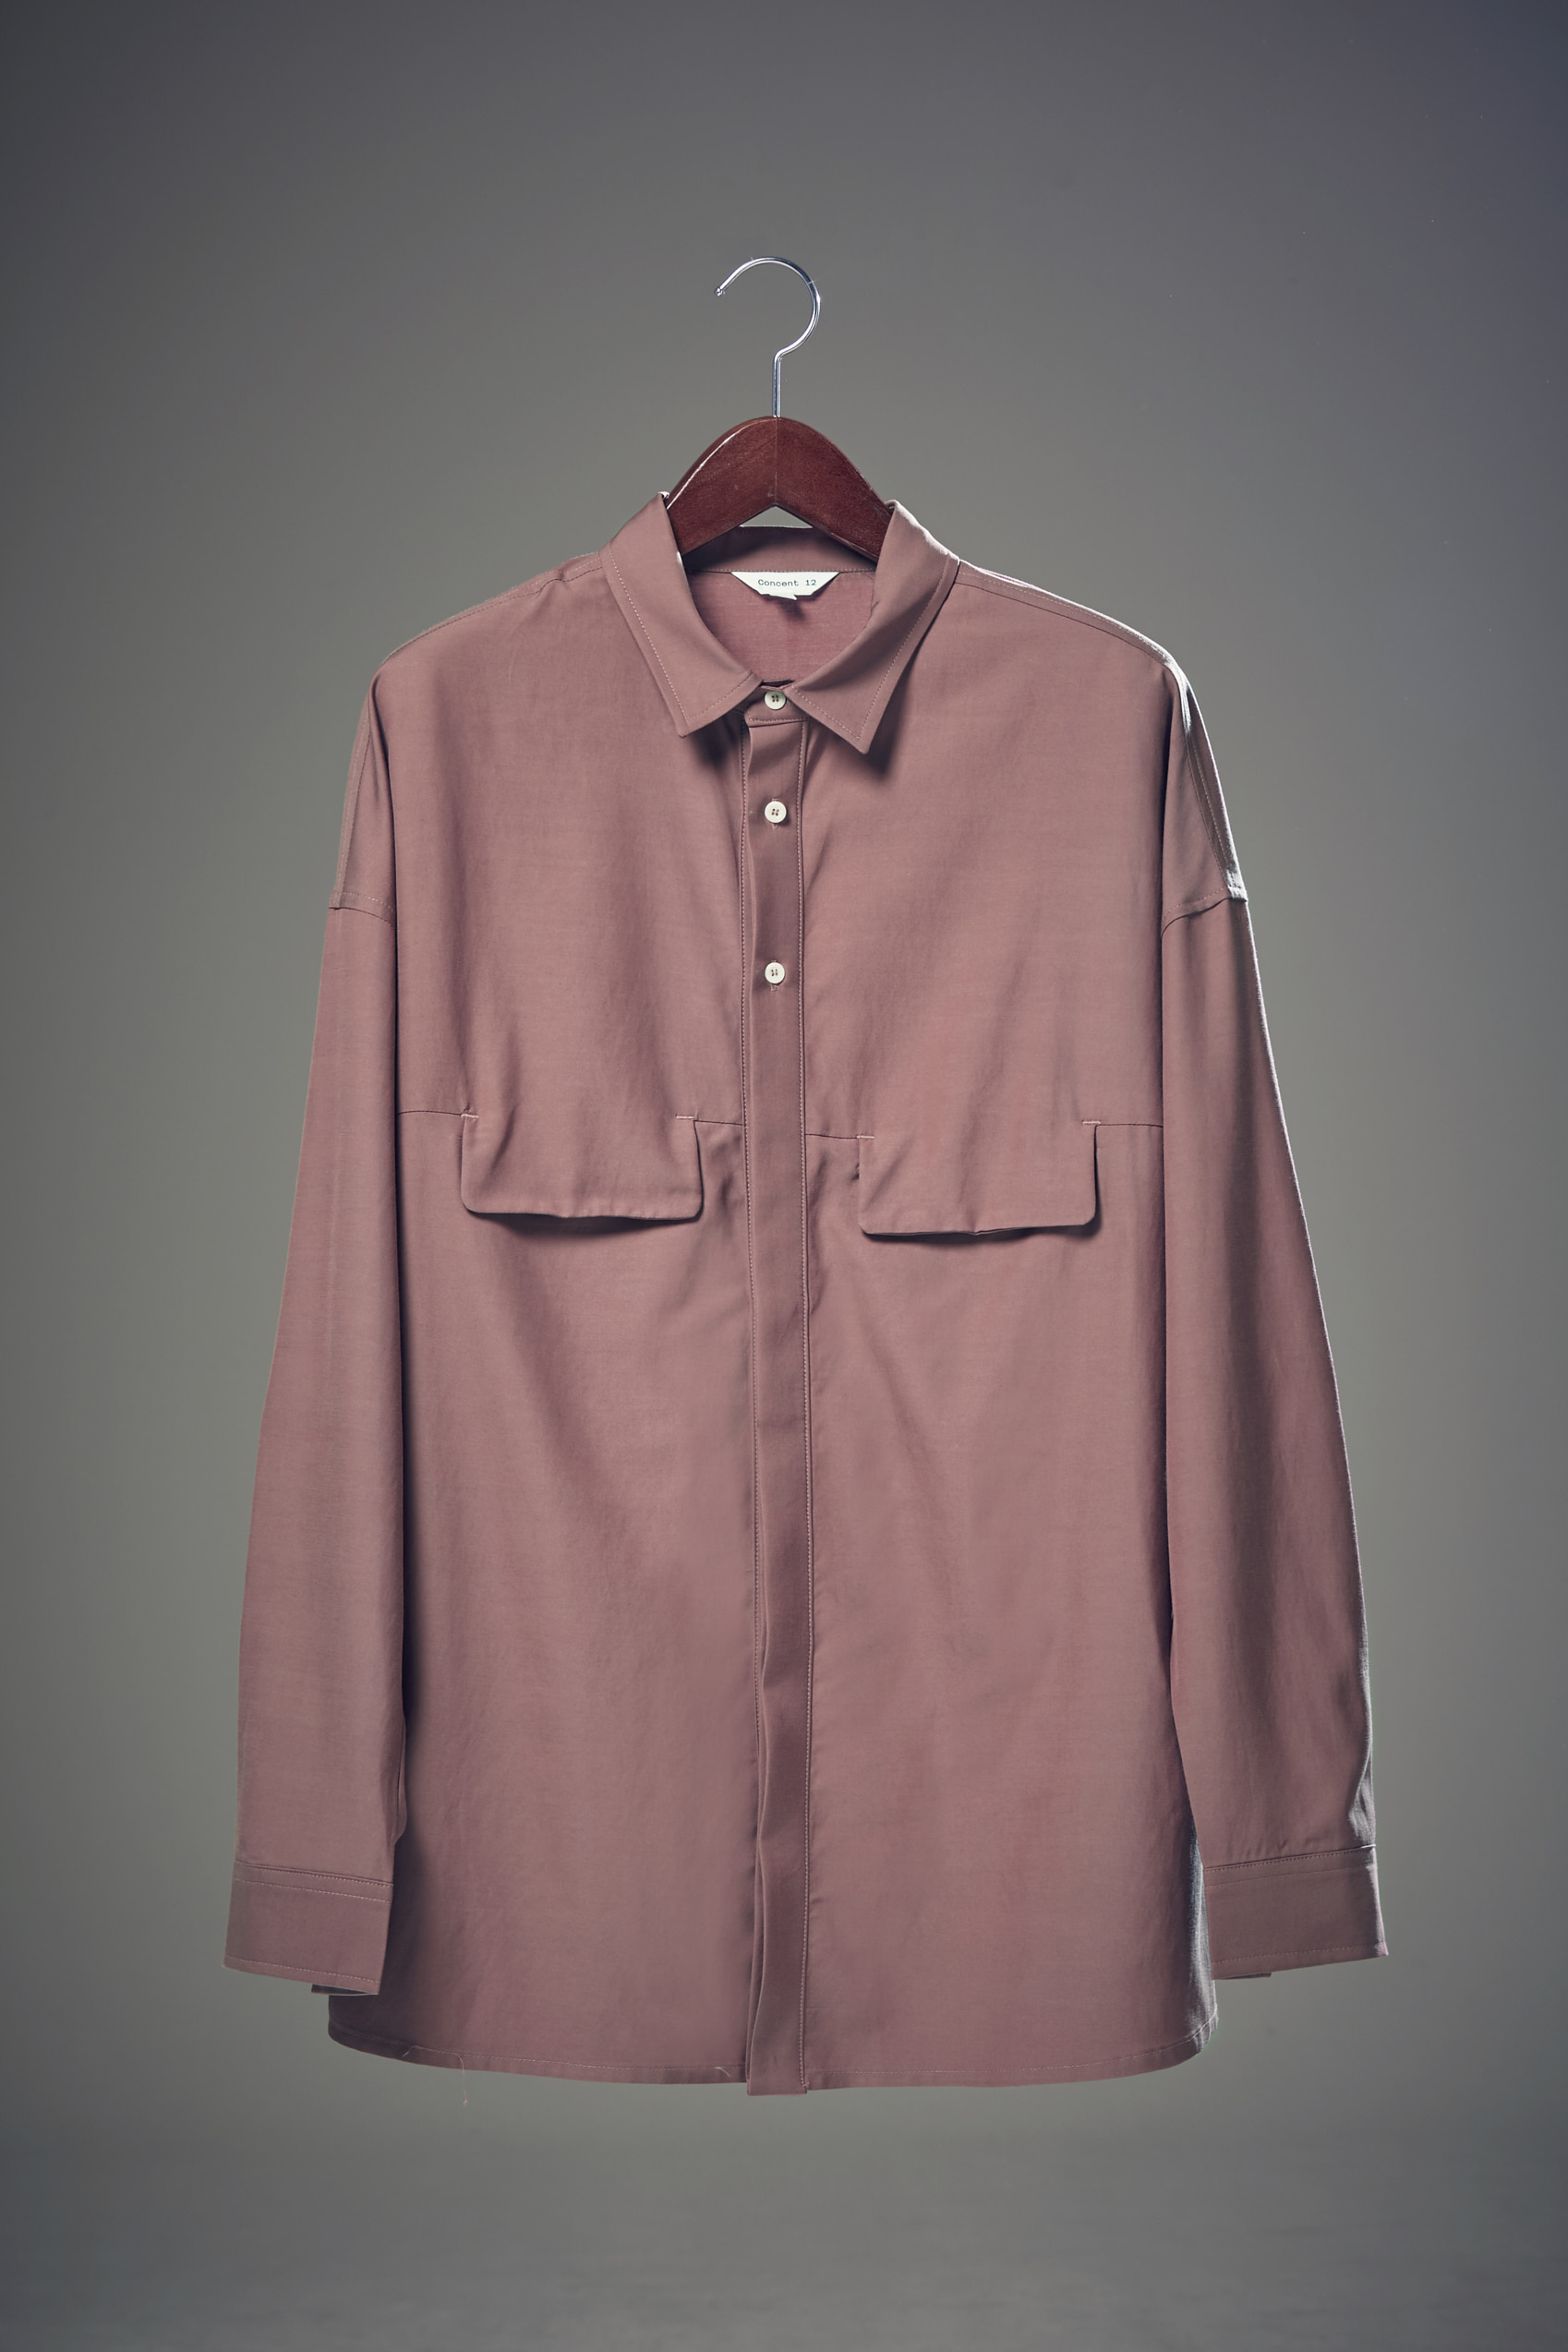 Overfit Hidden Flap Pocket Shirt Dark Pink